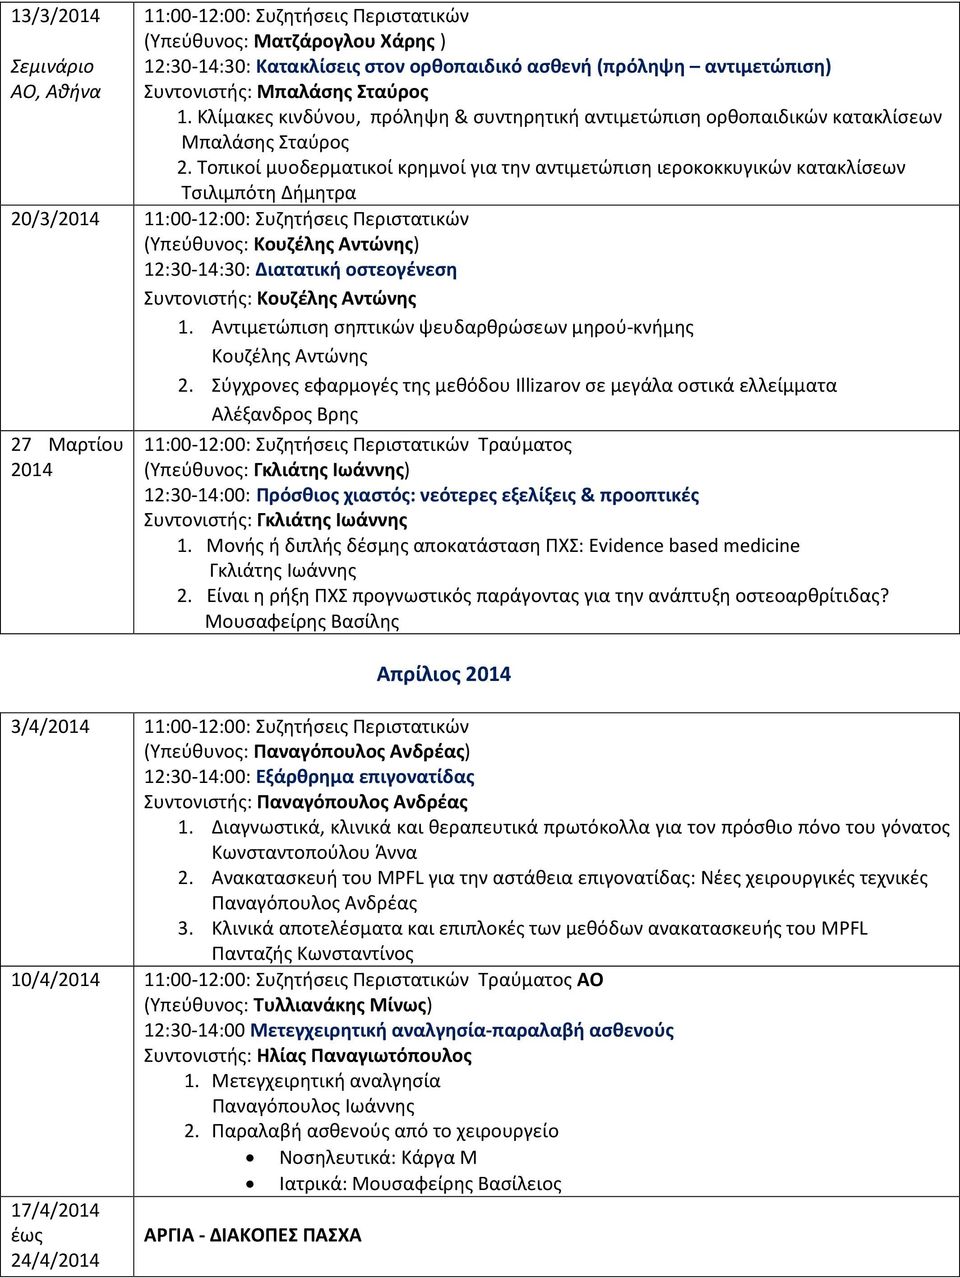 Τοπικοί μυοδερματικοί κρημνοί για την αντιμετώπιση ιεροκοκκυγικών κατακλίσεων Τσιλιμπότη Δήμητρα 20/3/2014 11:00-12:00: Συζητήσεις Περιστατικών 12:30-14:30: Διατατική οστεογένεση Συντονιστής: